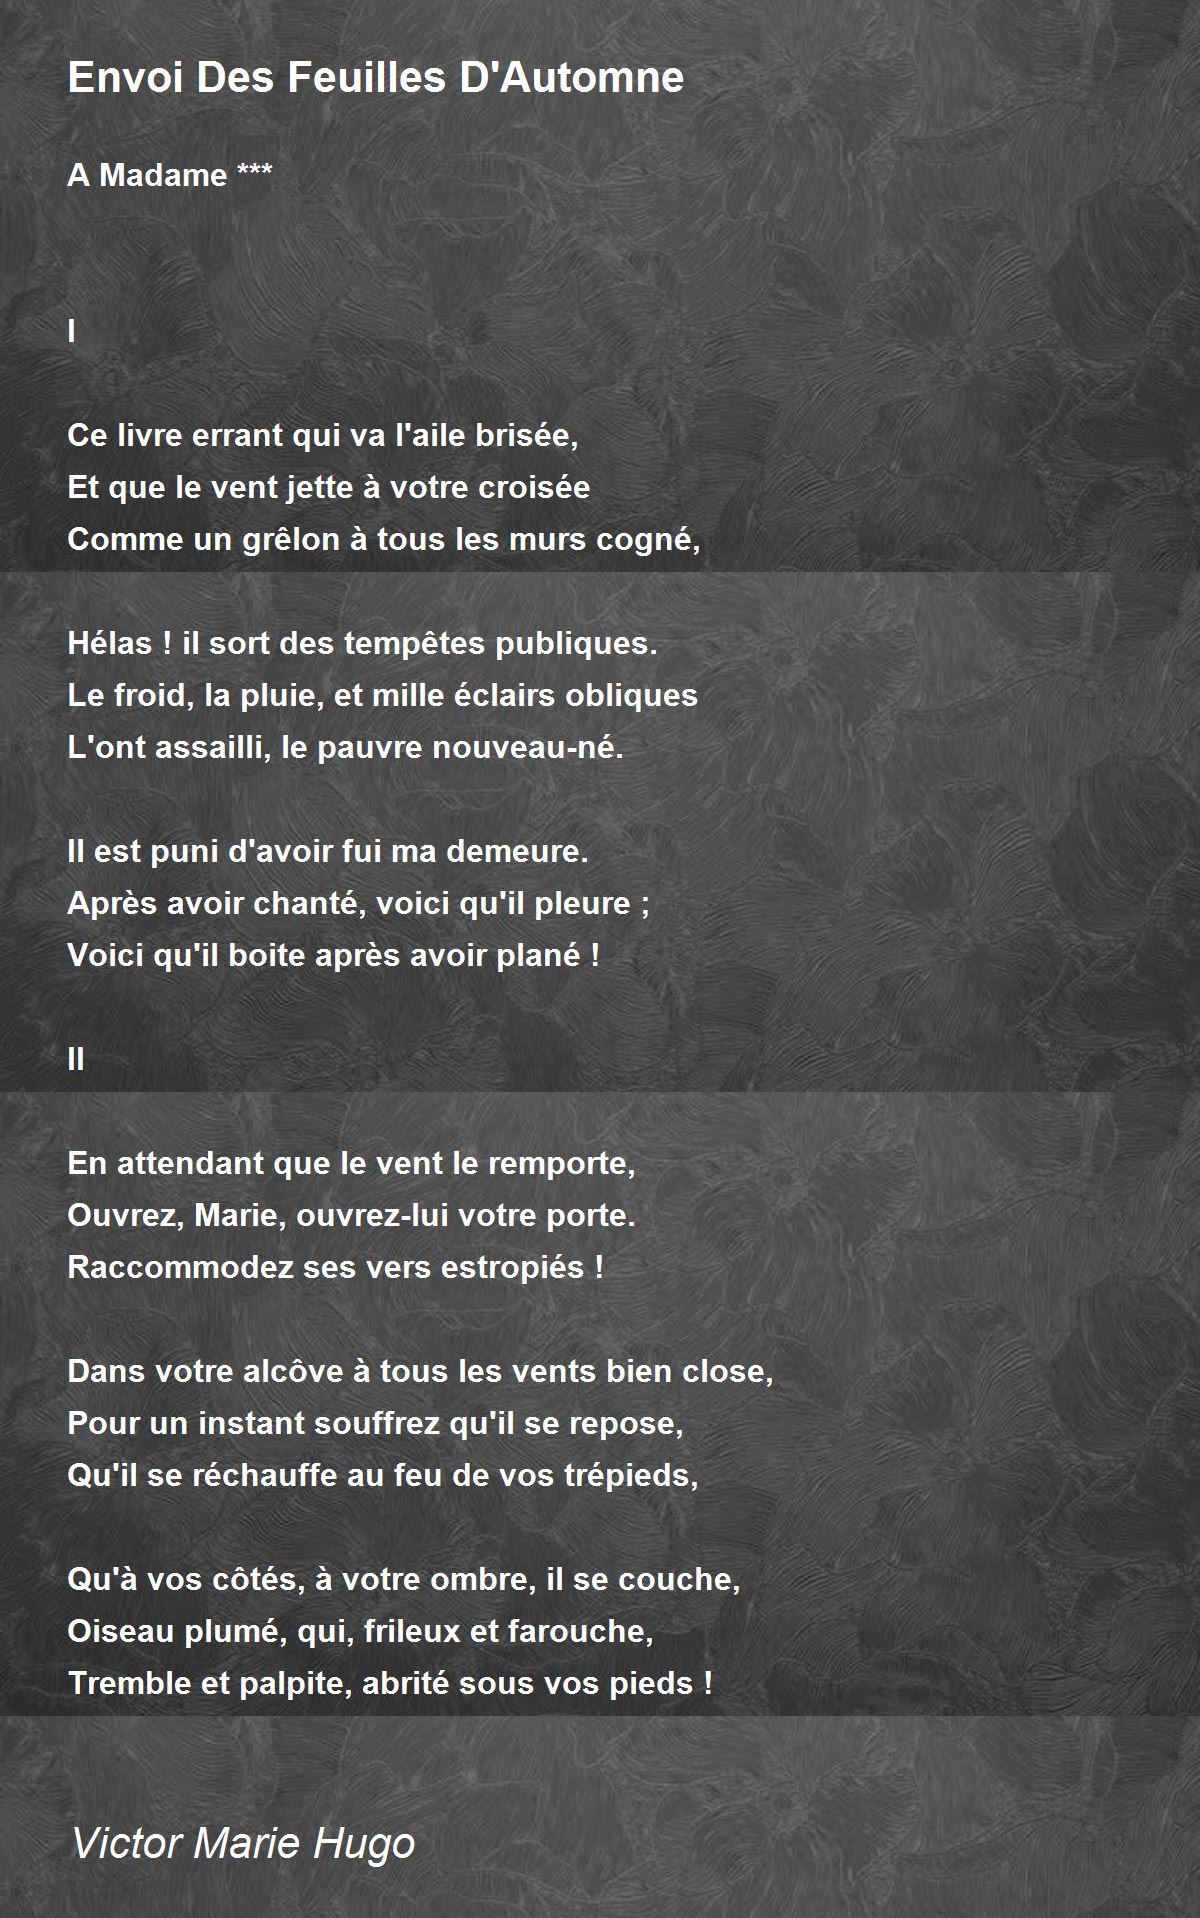 Envoi Des Feuilles D'Automne - Envoi Des Feuilles D'Automne Poem by ...